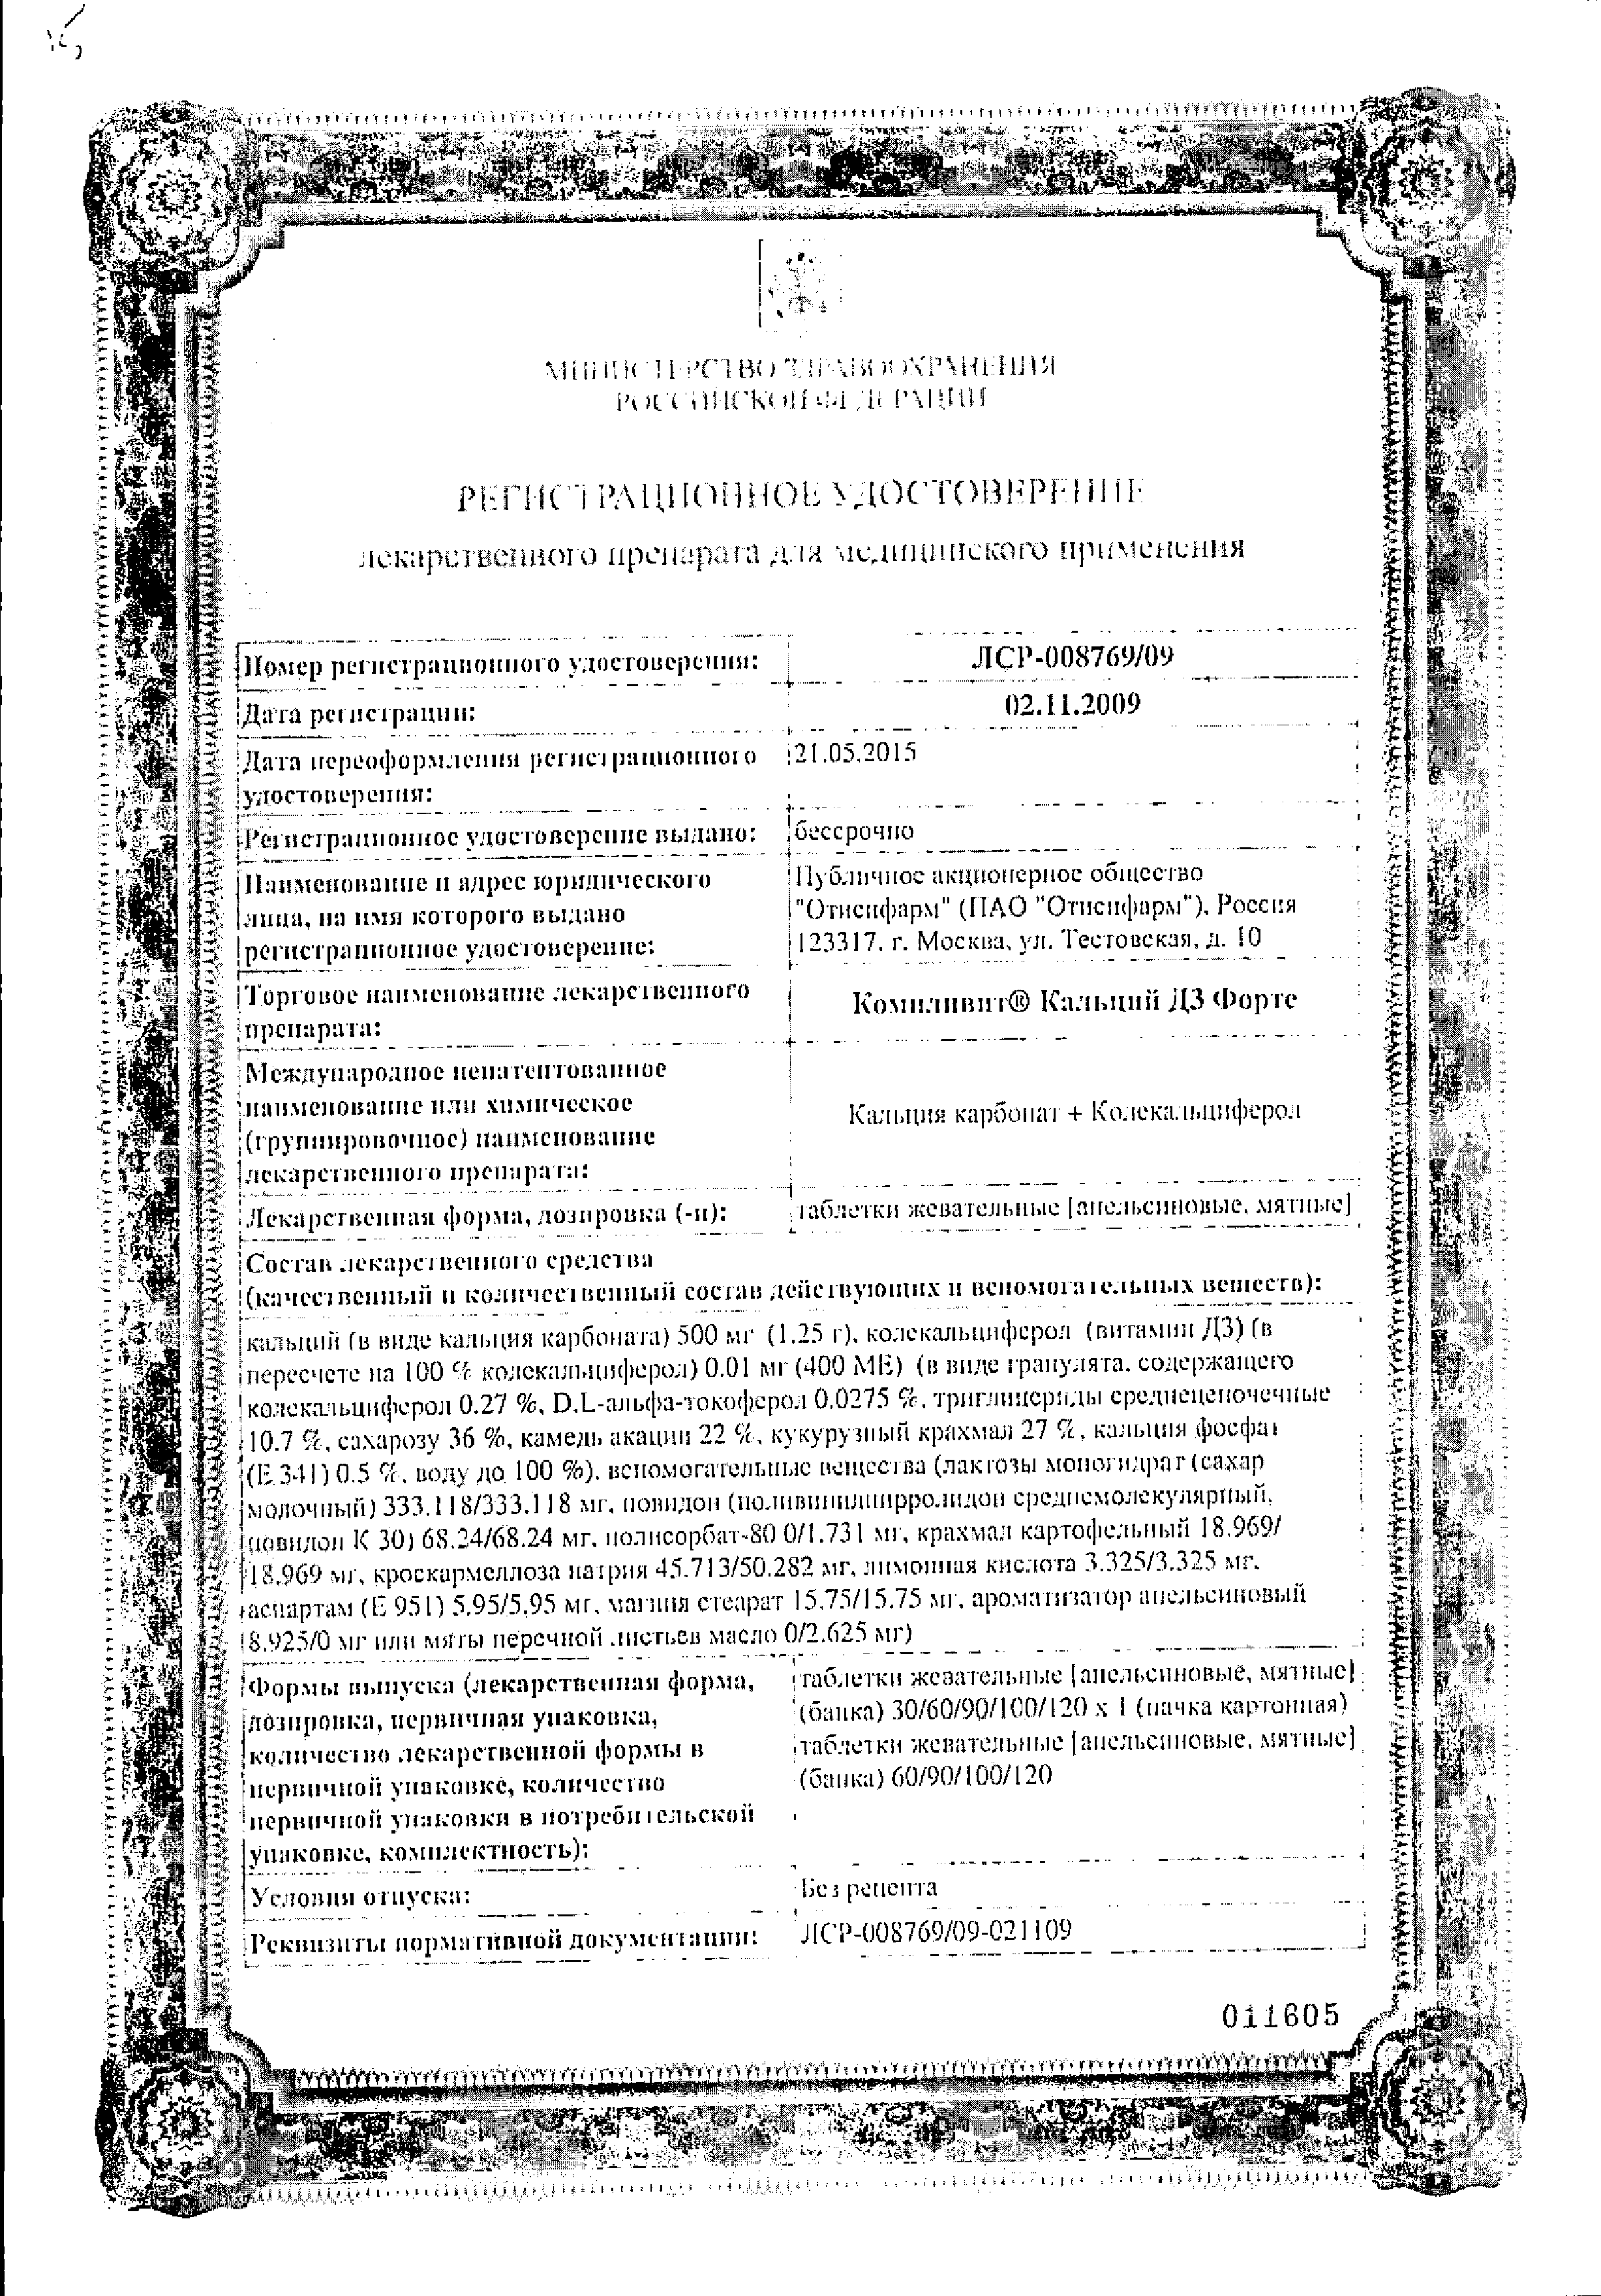 Компливит кальций Д3 форте (мята) сертификат